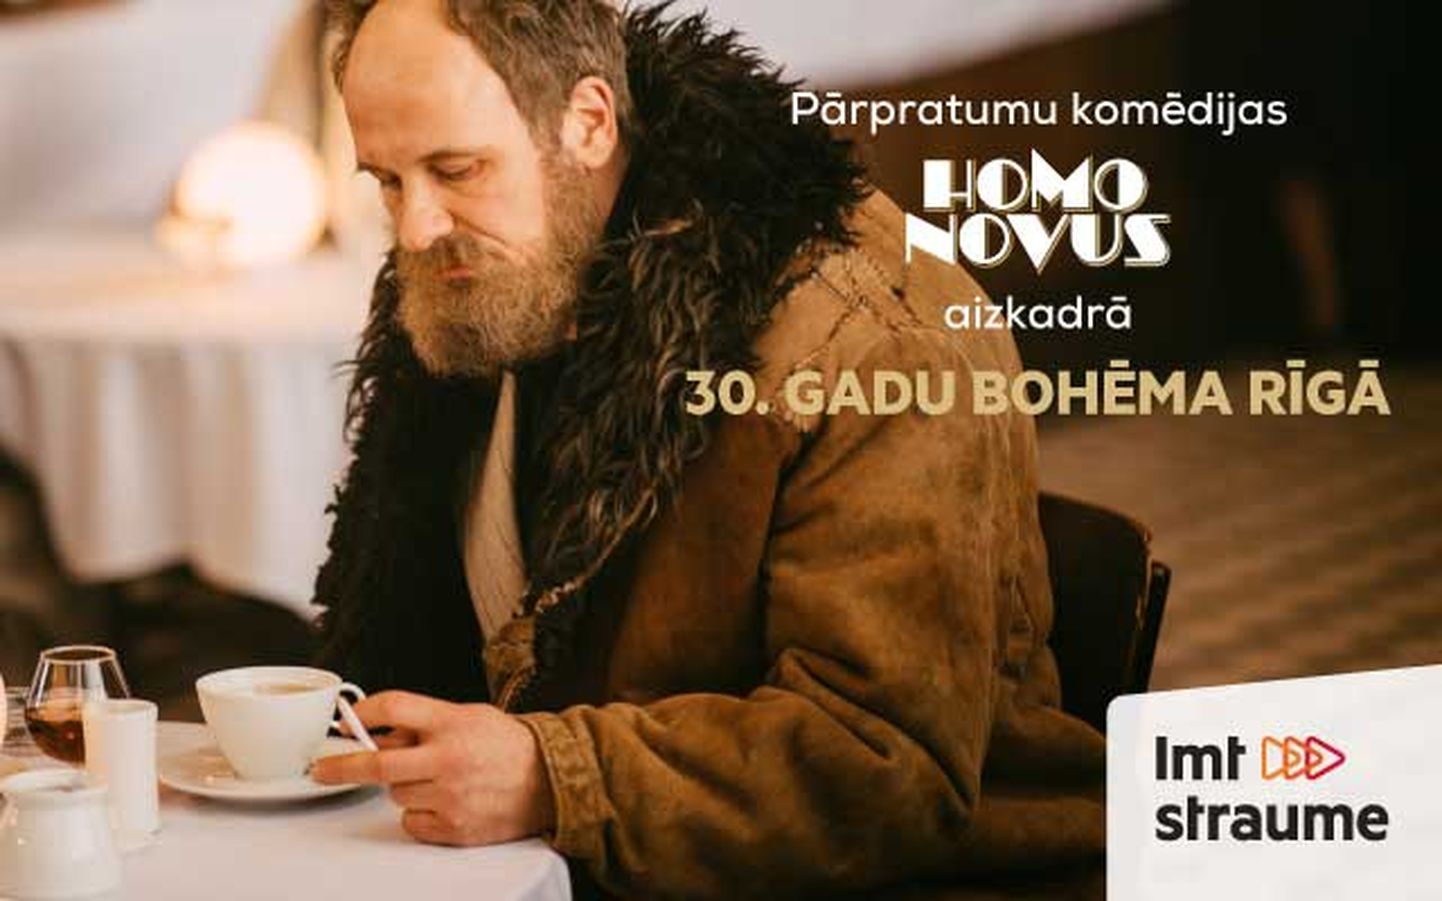 Filmas “Homo Novus” aizskadrā: 30. gadu bohēma Rīgā